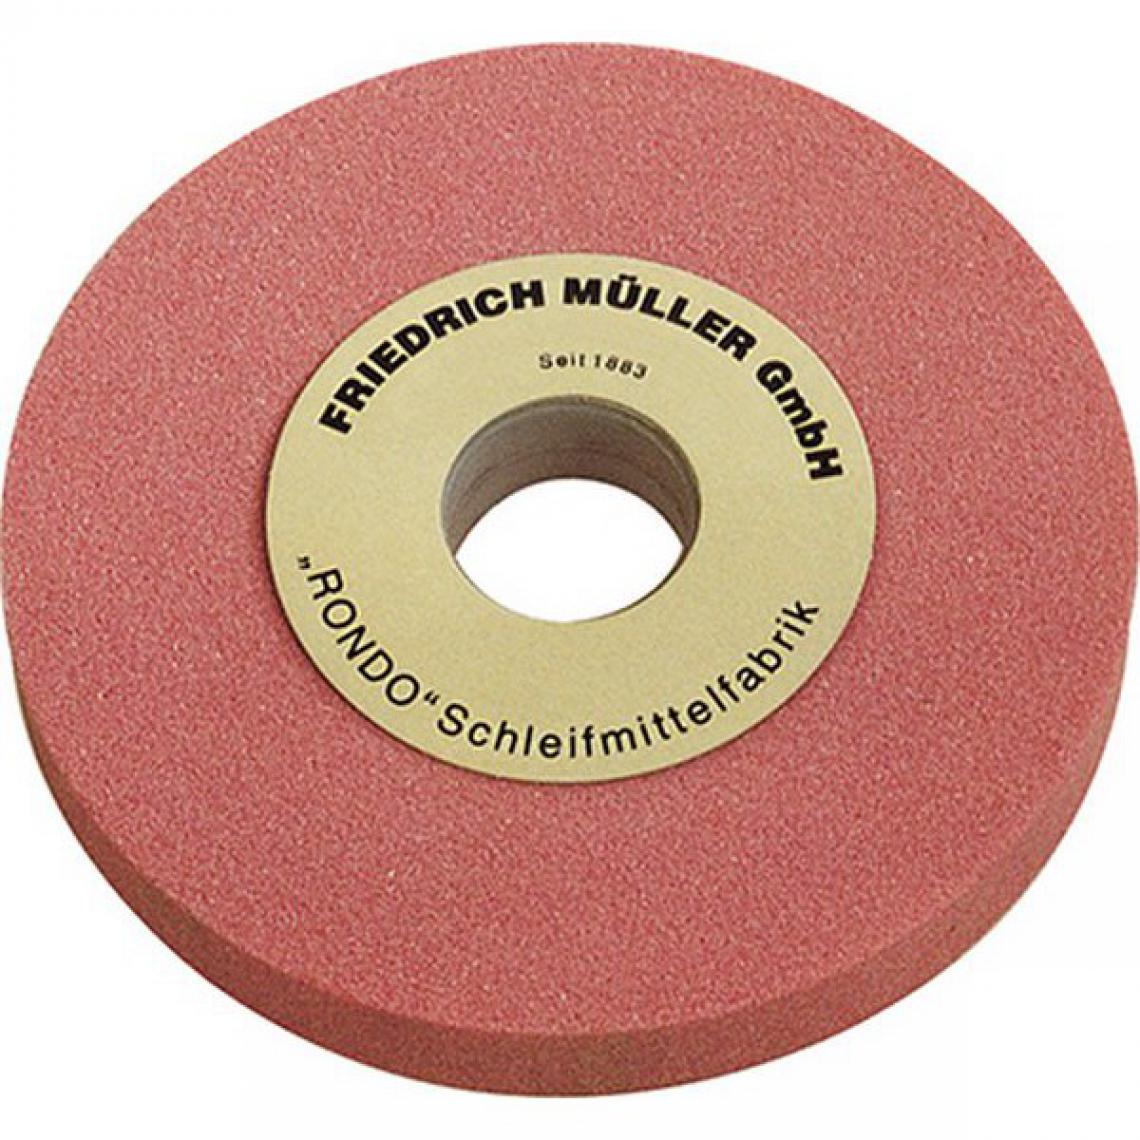 Muller - Meule, au corindon raffiné, rose, Dimensions : 200 x 32 x 51 mm, Grain 60, Dureté M - Accessoires meulage